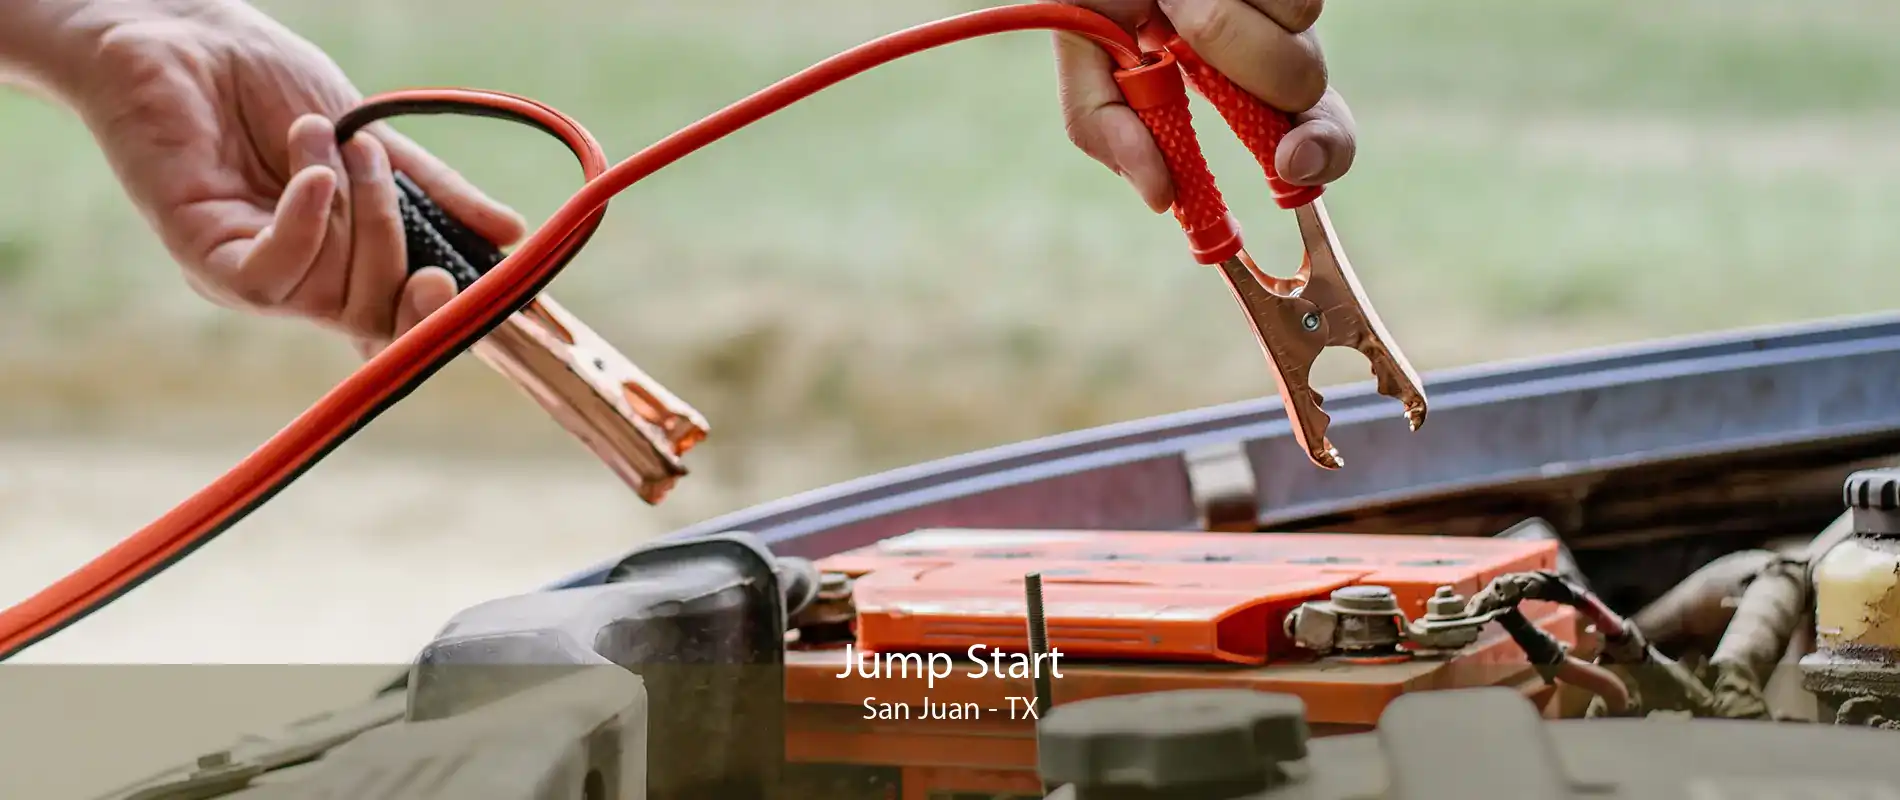 Jump Start San Juan - TX